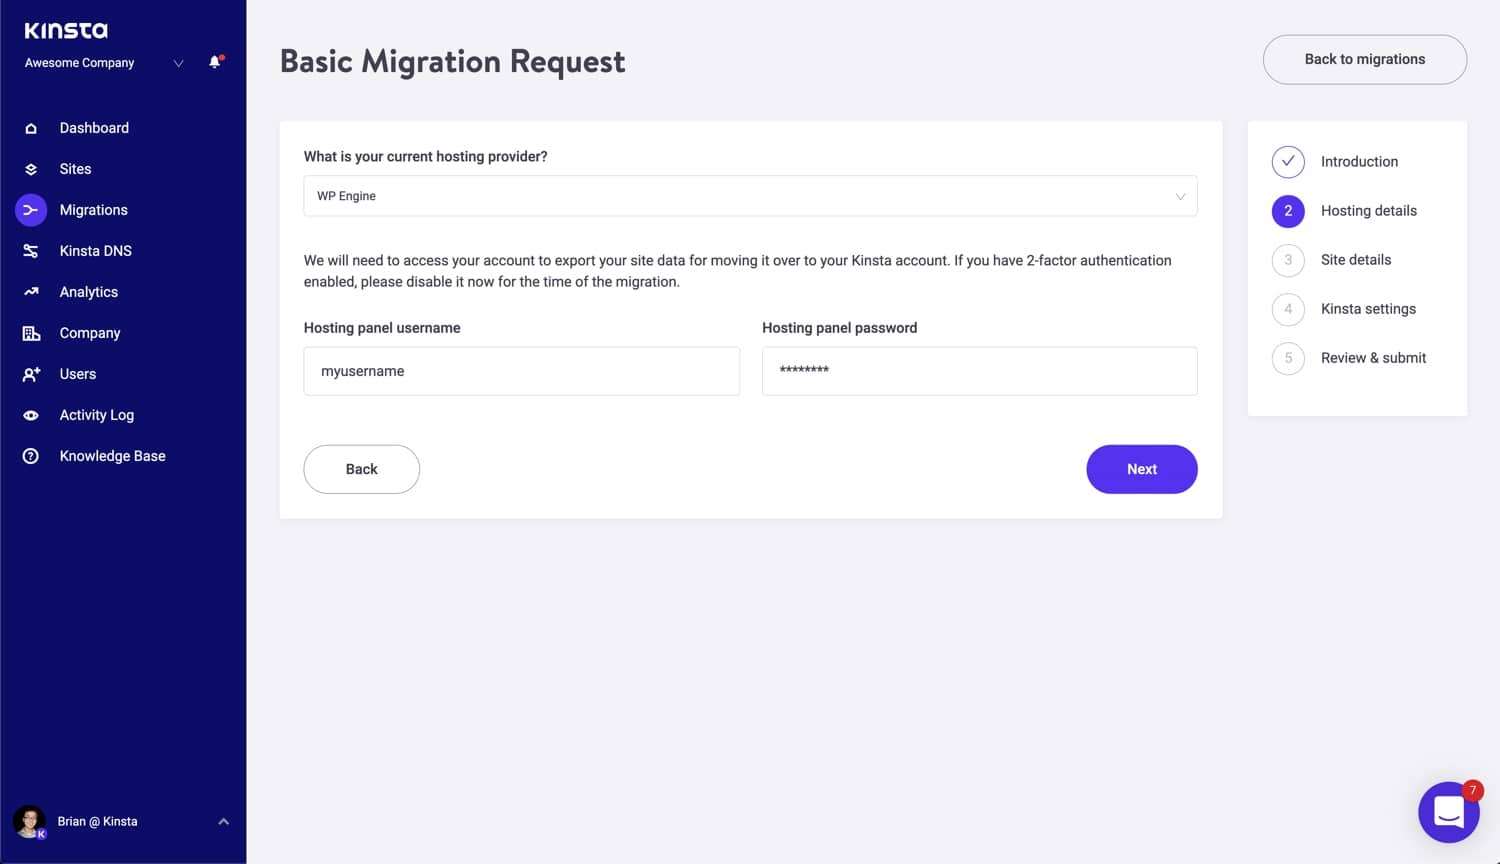 Añade los datos de tu alojamiento a tu solicitud de migración básica